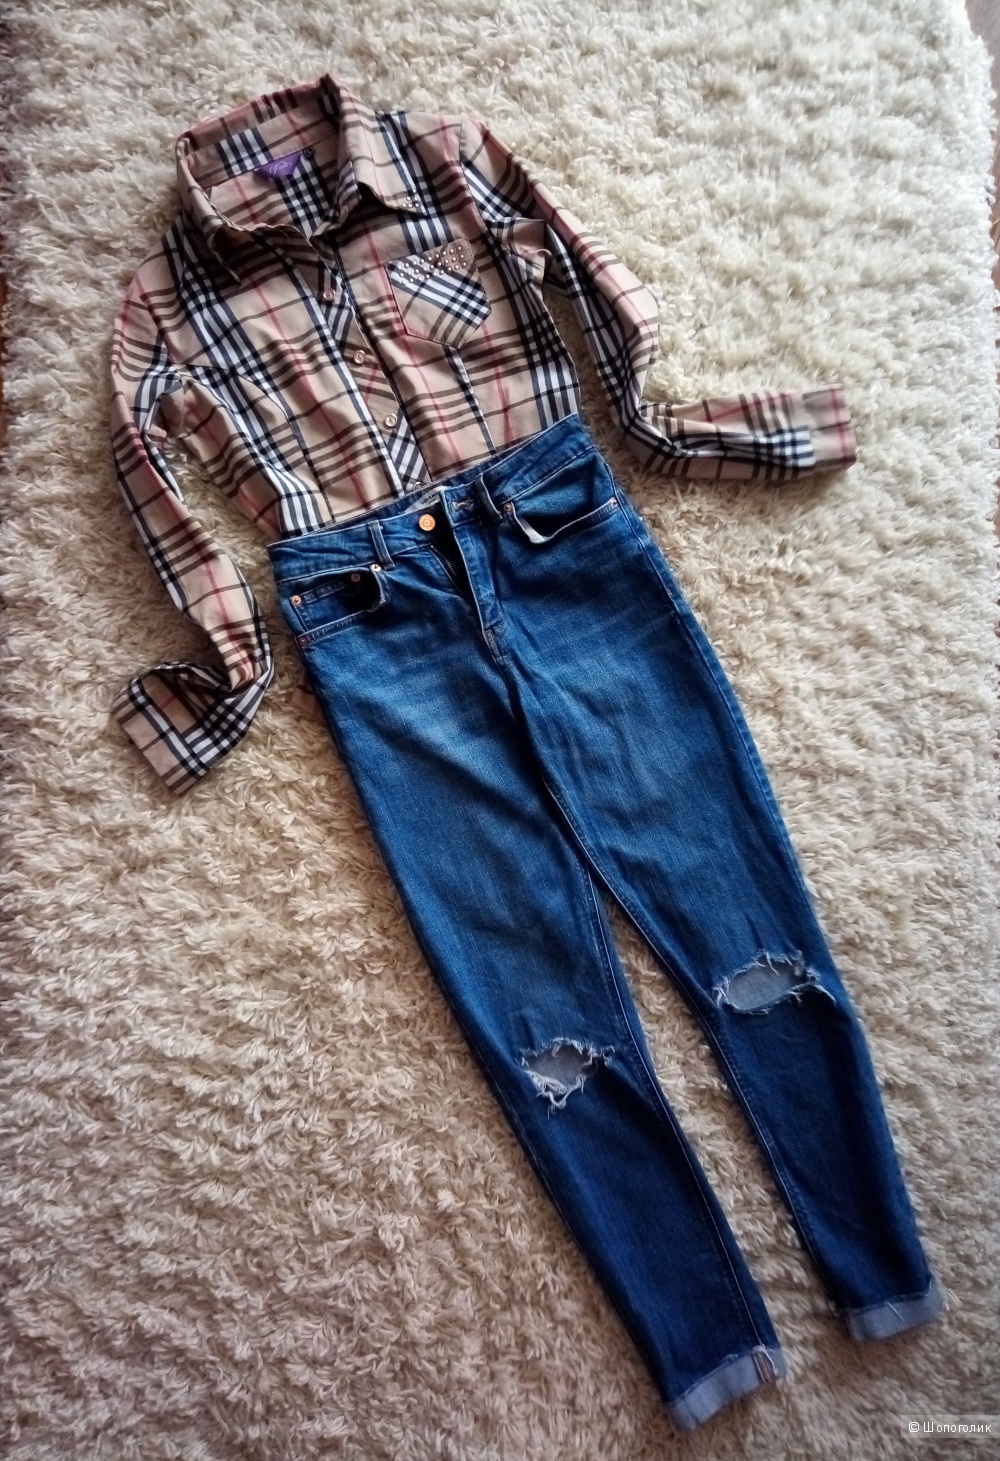 Комплектом джинсы VEROMODA и рубашка, размер S(M)